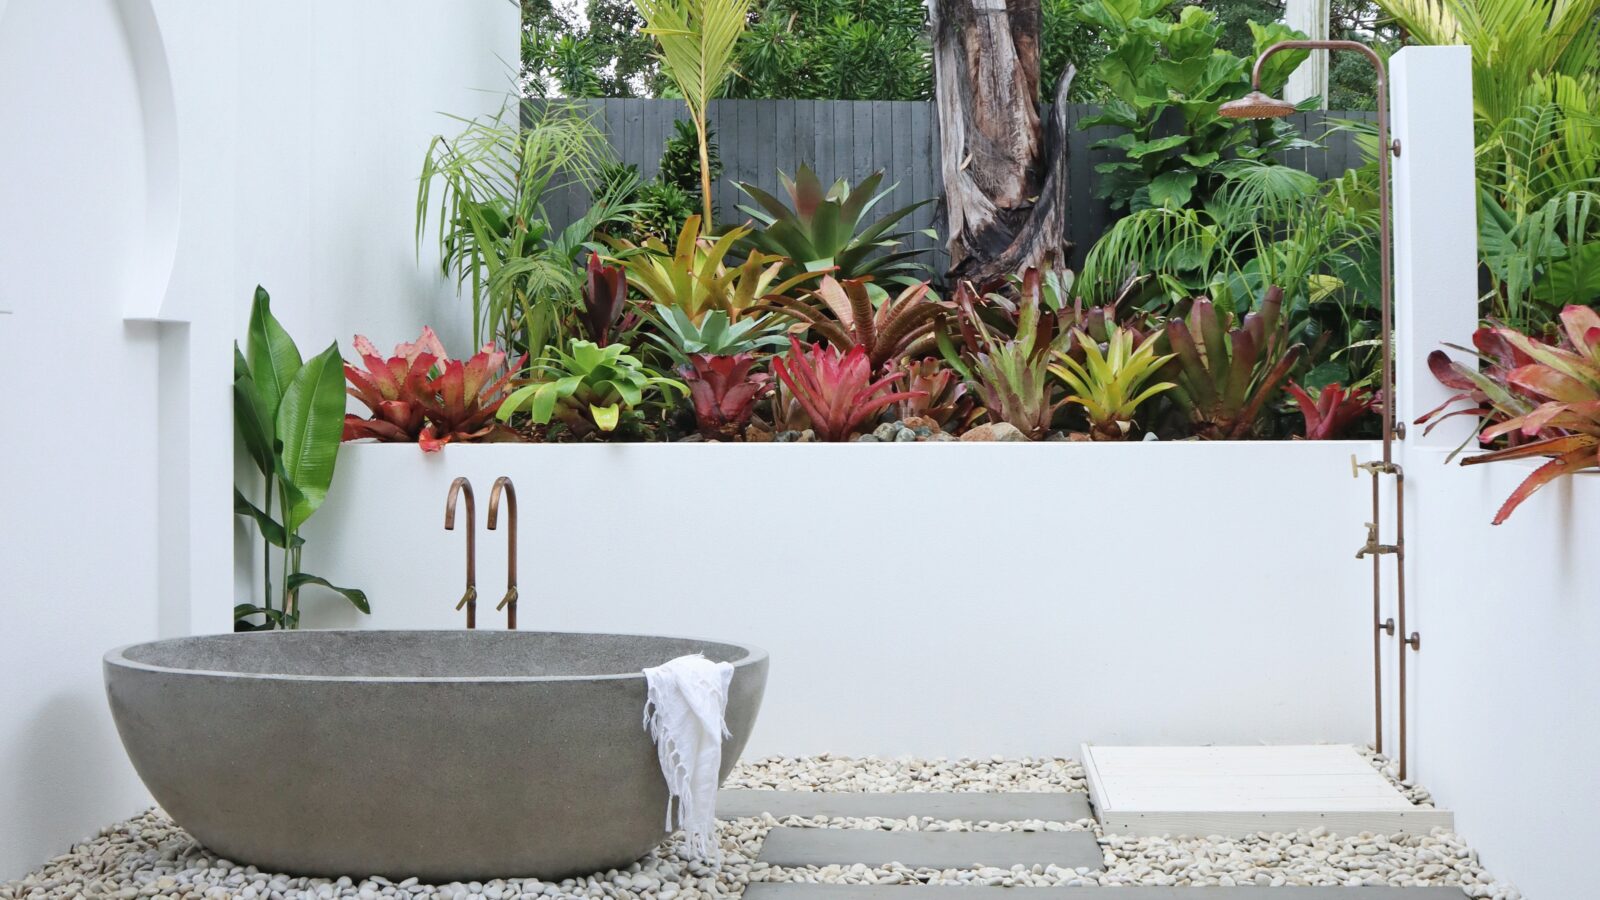 Soak in your private outdoor stone bath